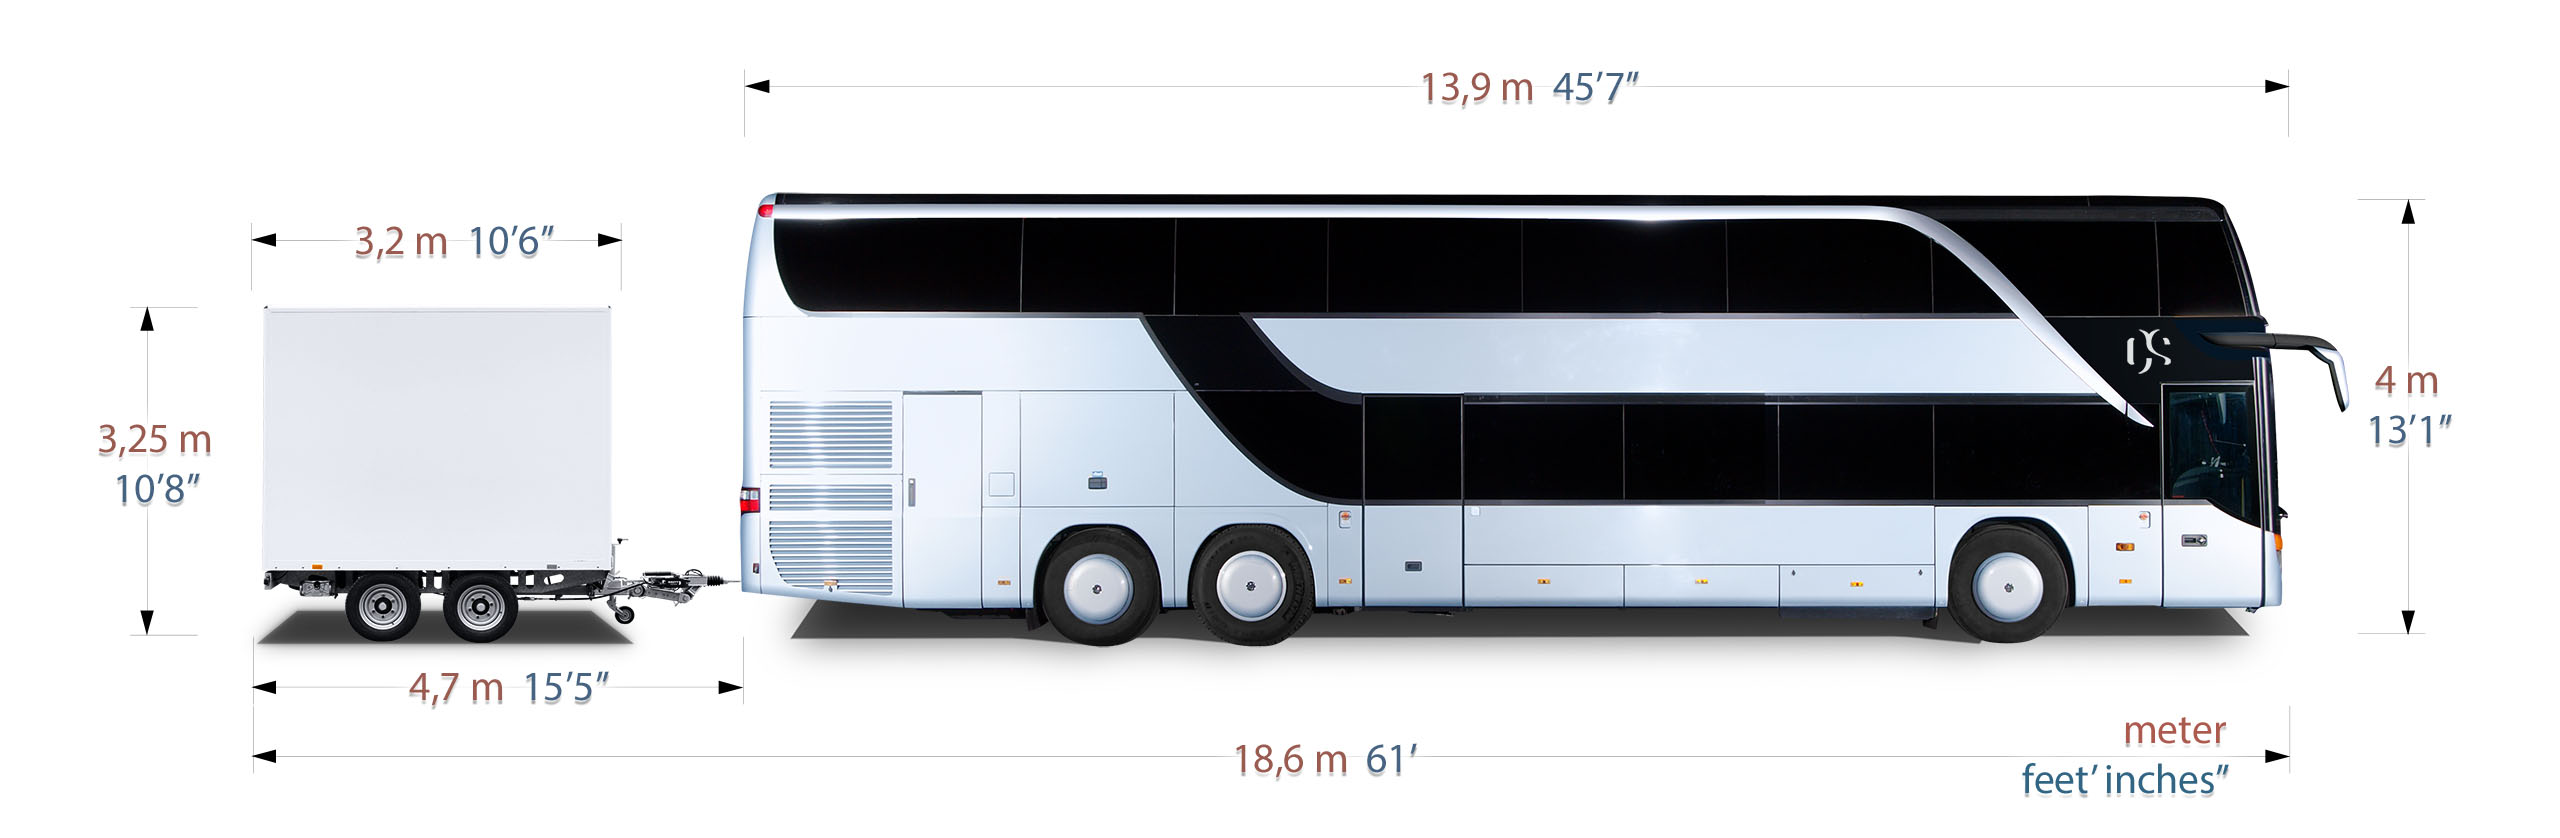 tourist bus length